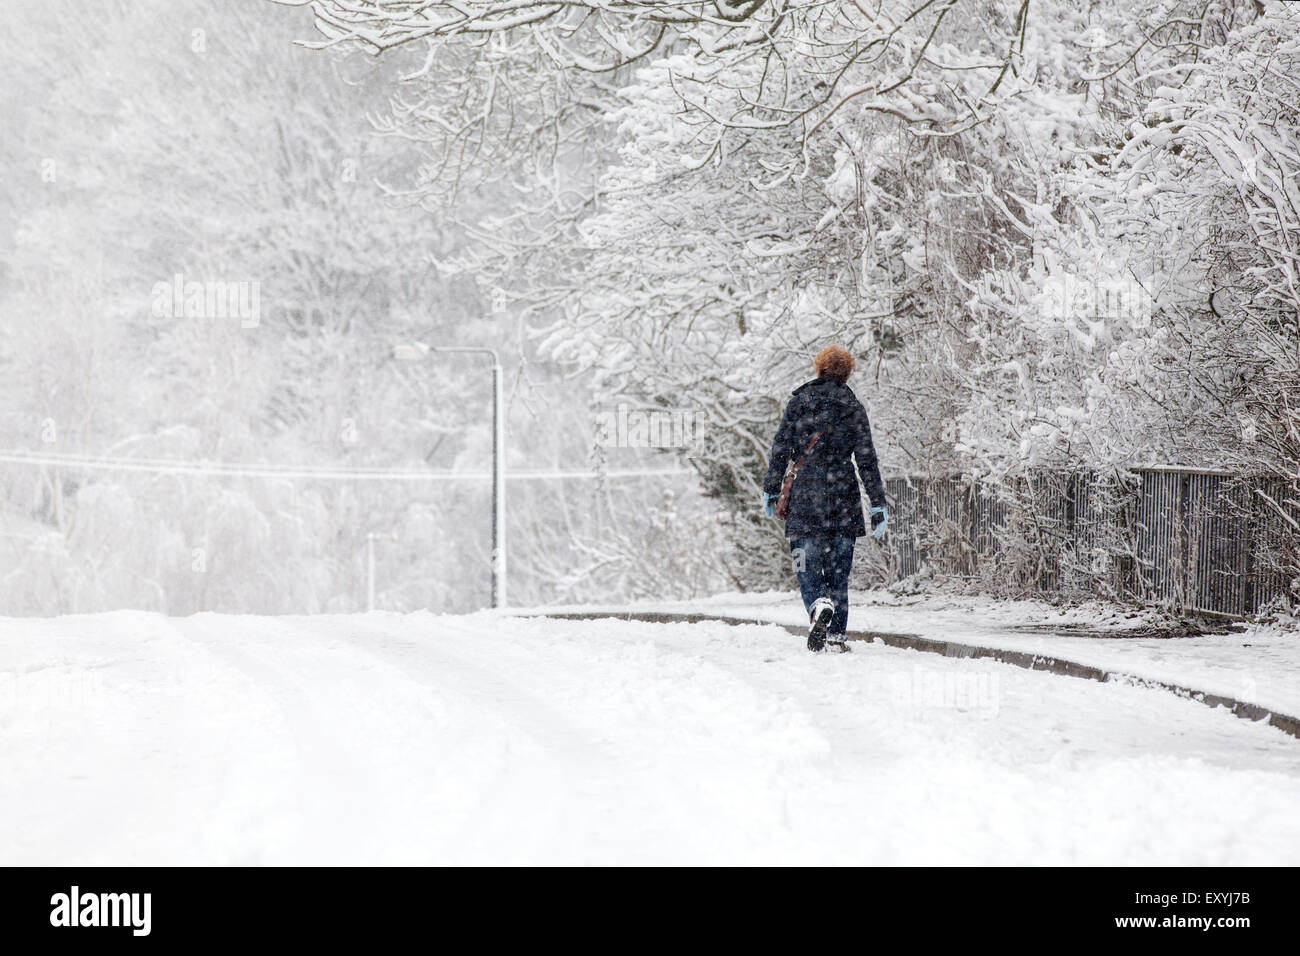 Eine Frau entlang eine verschneite Vorstadt Straße durch eine snow Blizzard. Über die Straße einige Griff, wie der Fußweg zu gewinnen ist eingefroren und rutschig Stockfoto